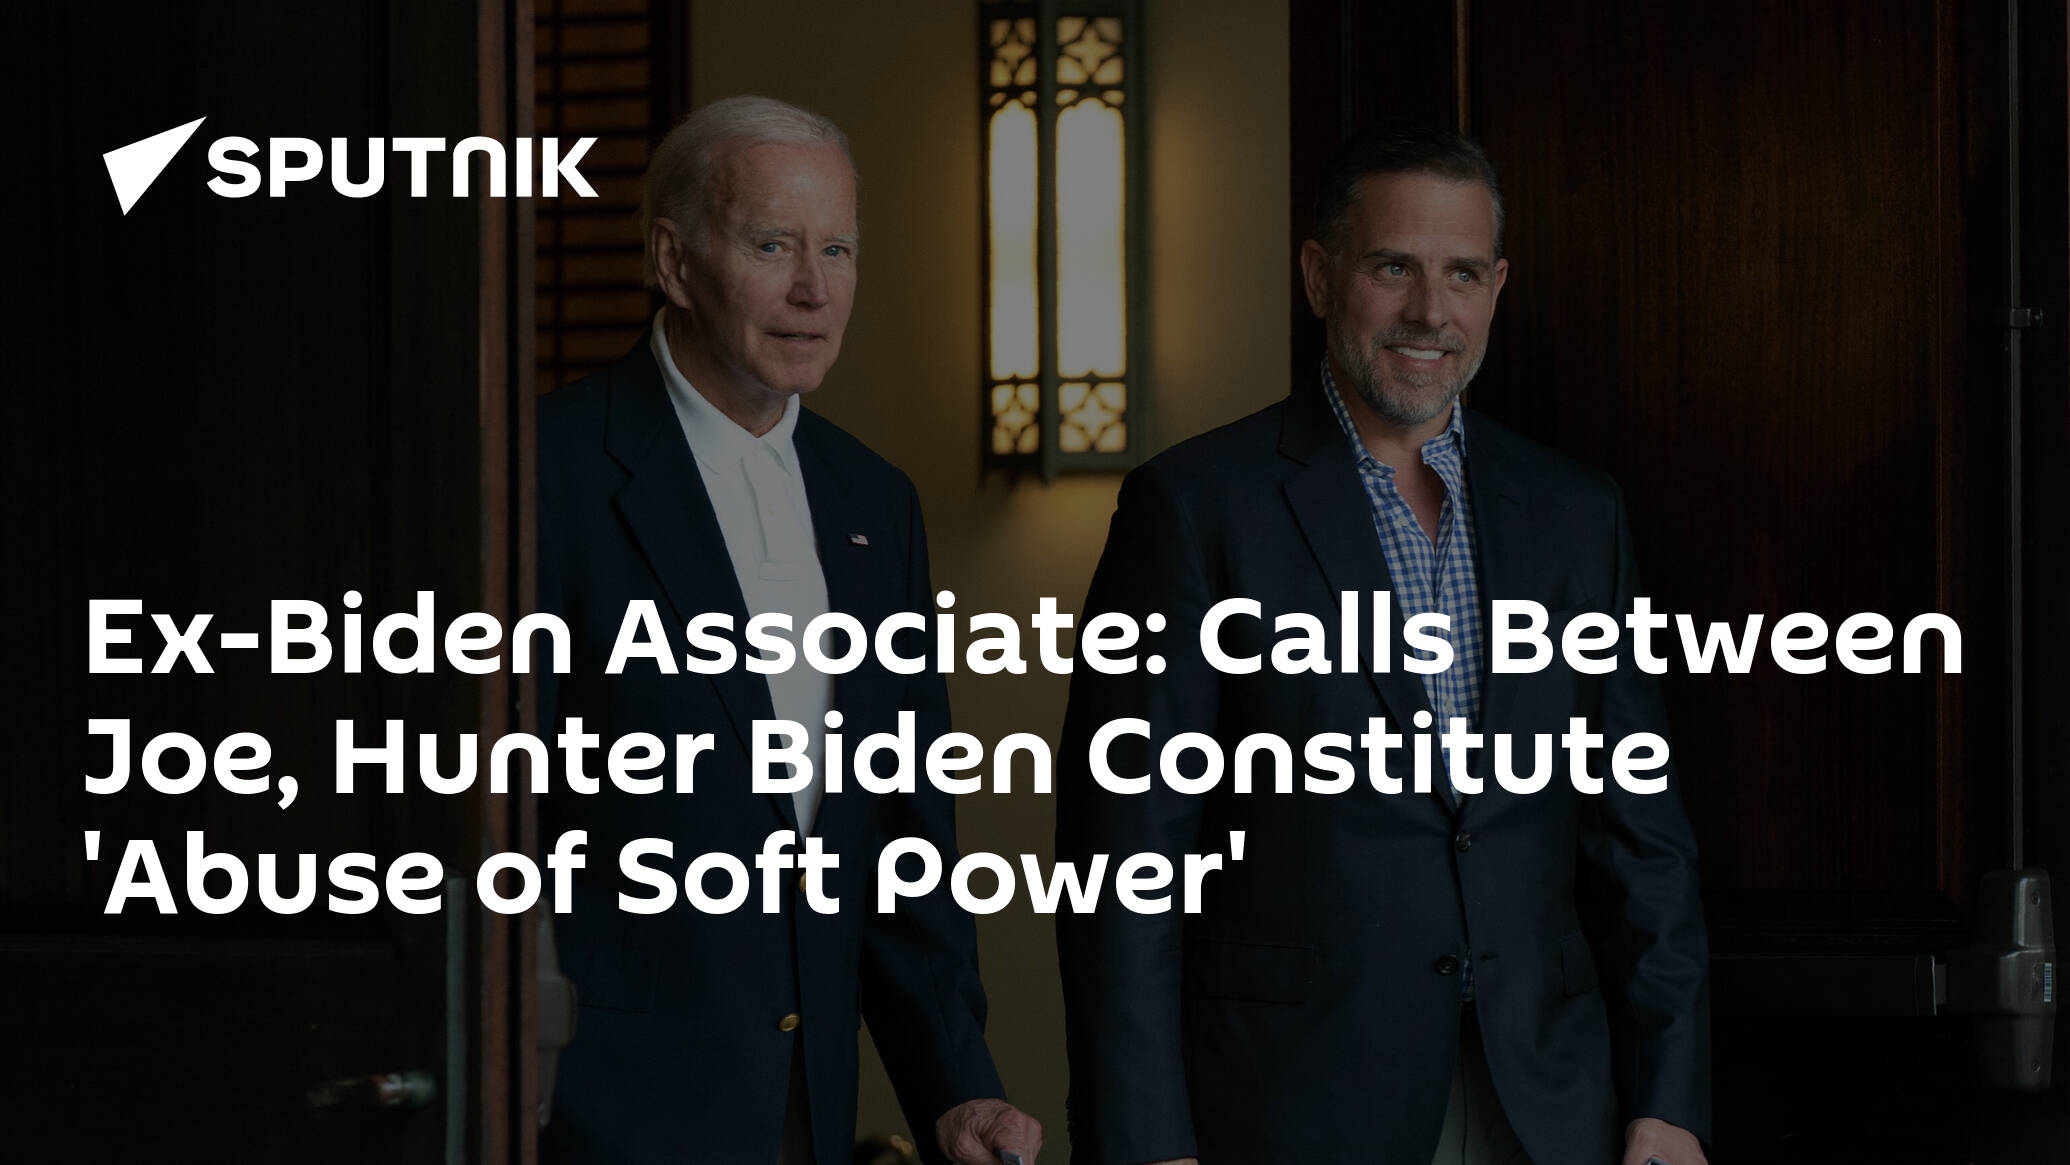 Ex-Biden Associate: Calls Between Joe, Hunter Biden Constitute 'Abuse of Soft Power'